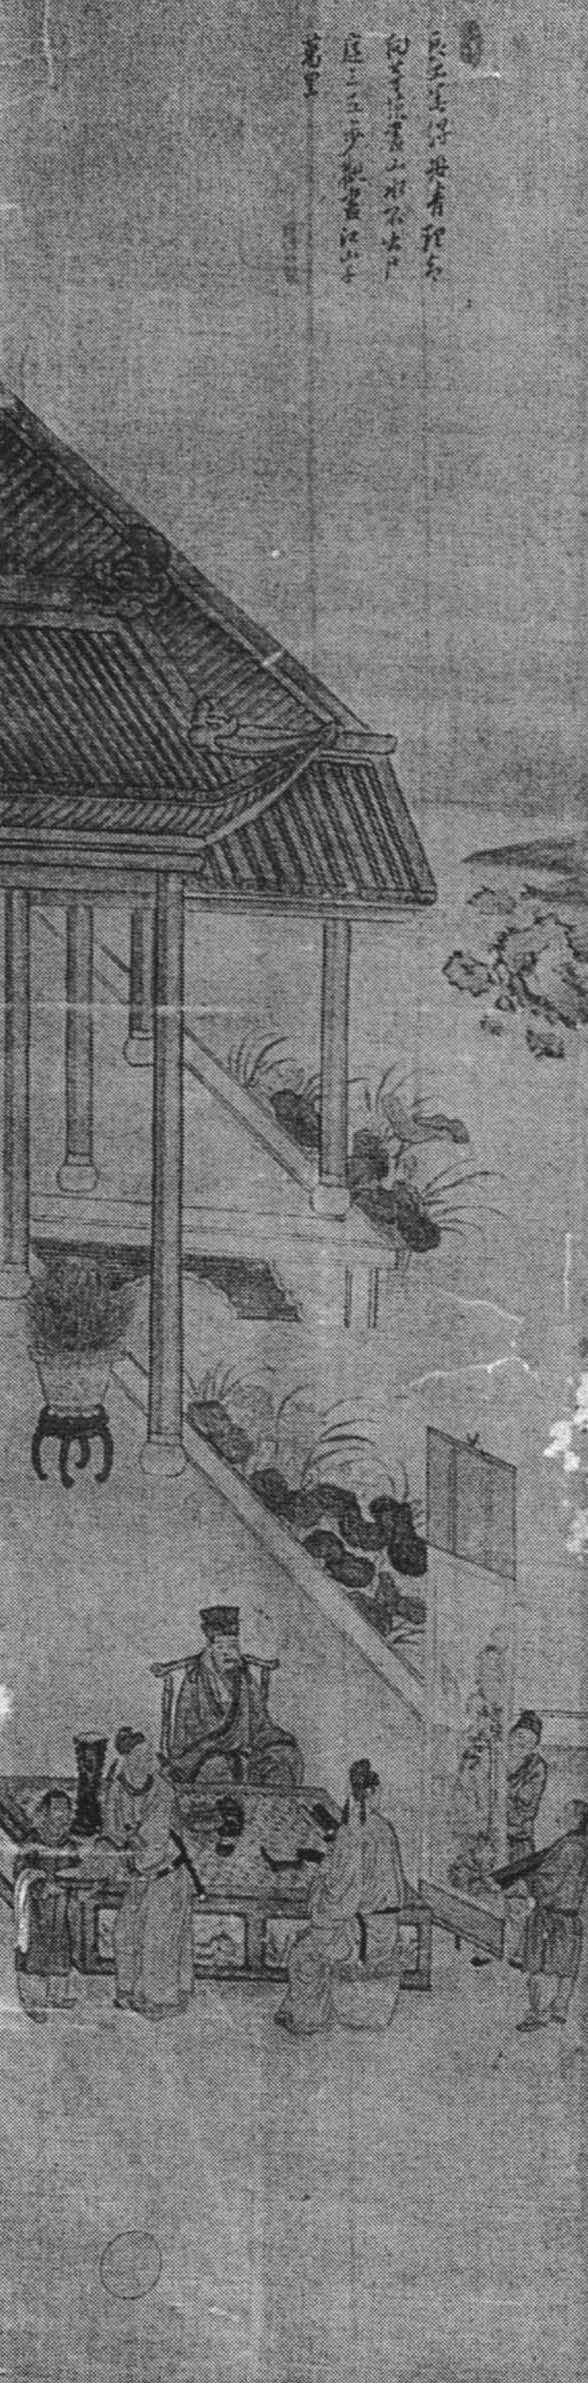 중국고사도(中國故事圖)10첩병풍 썸네일